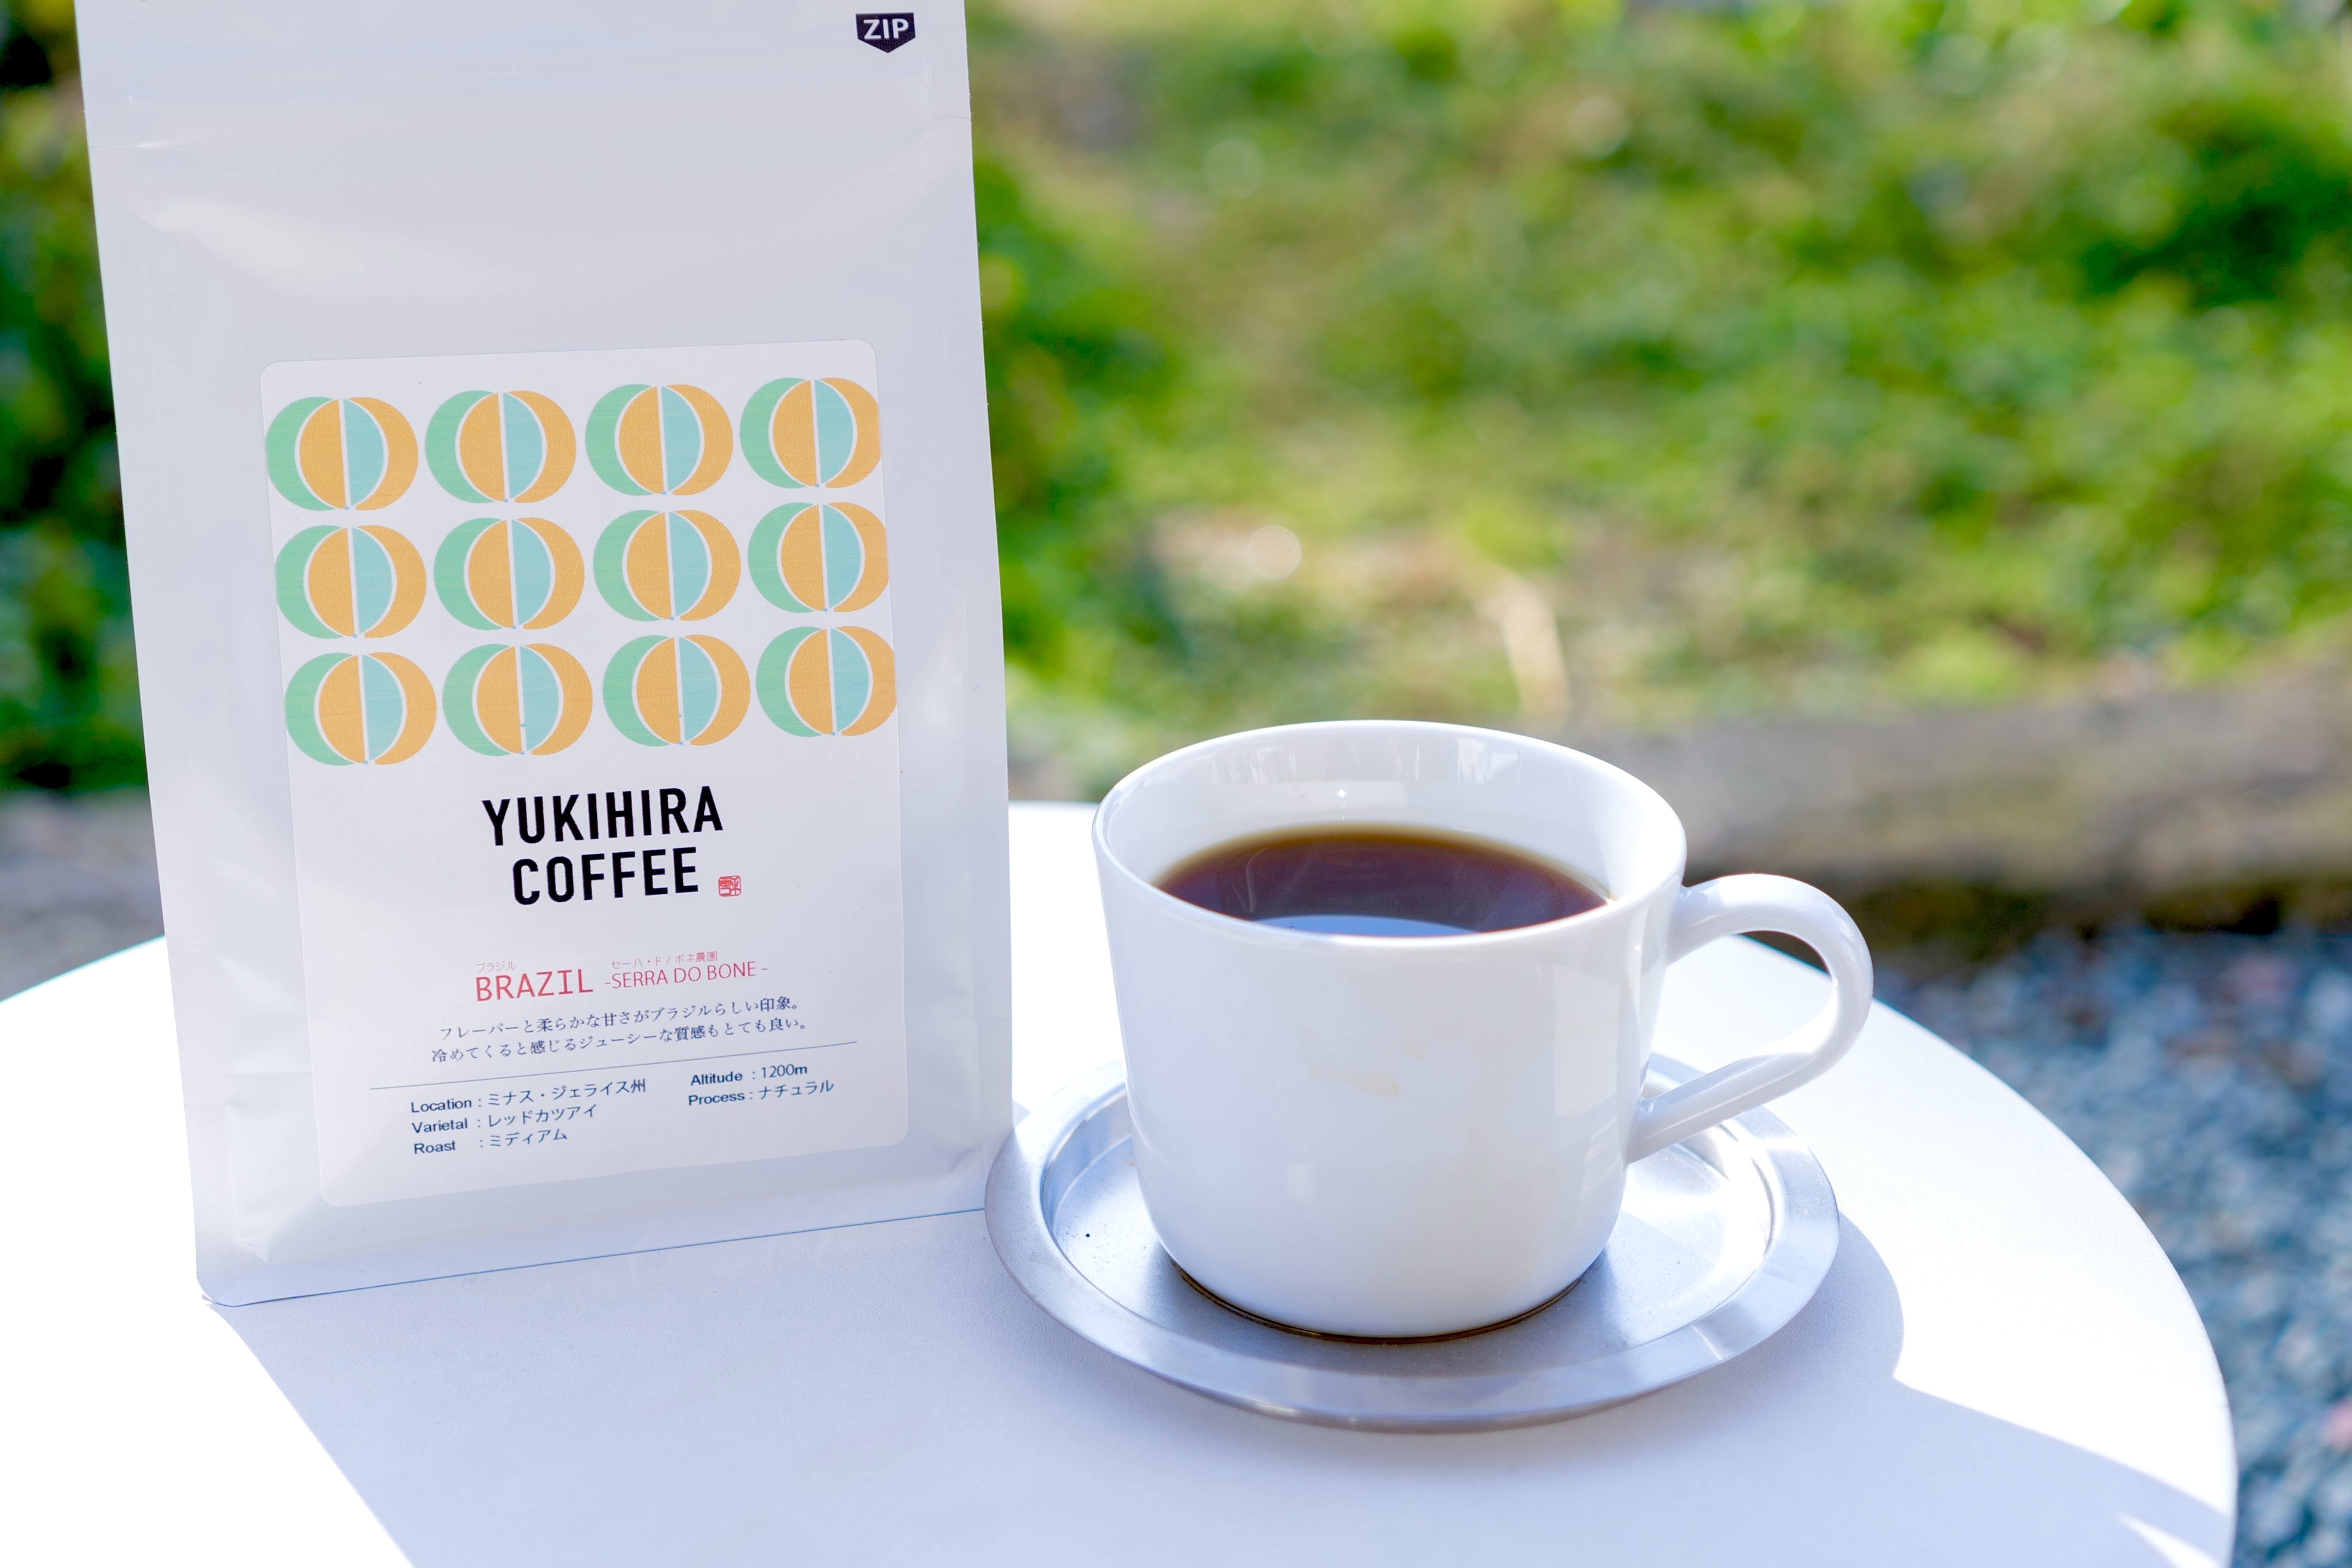 朝のコーヒー ブラジル セーハ ド ボネ農園 Yukihira Coffee